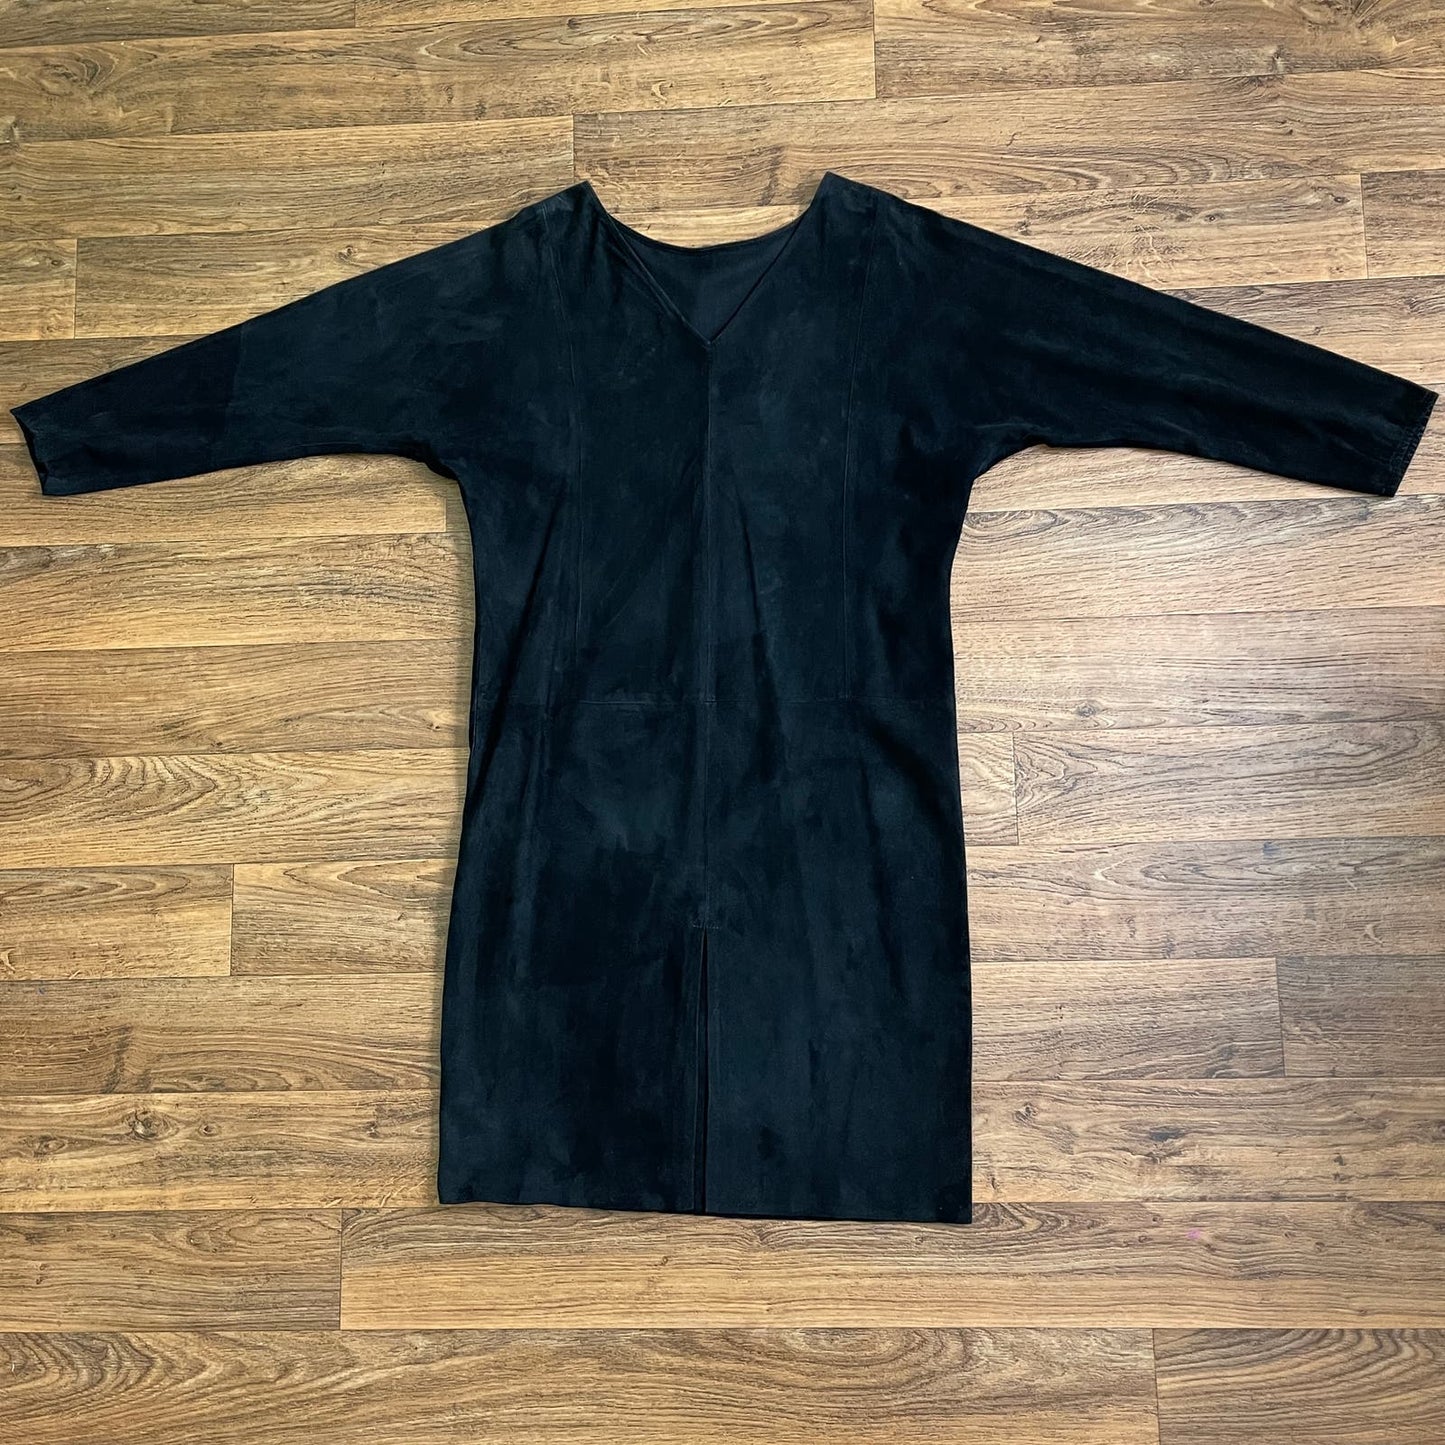 Vintage 90s Black Suede Leather Dress V Back Beaded Design Judith Ann Creations